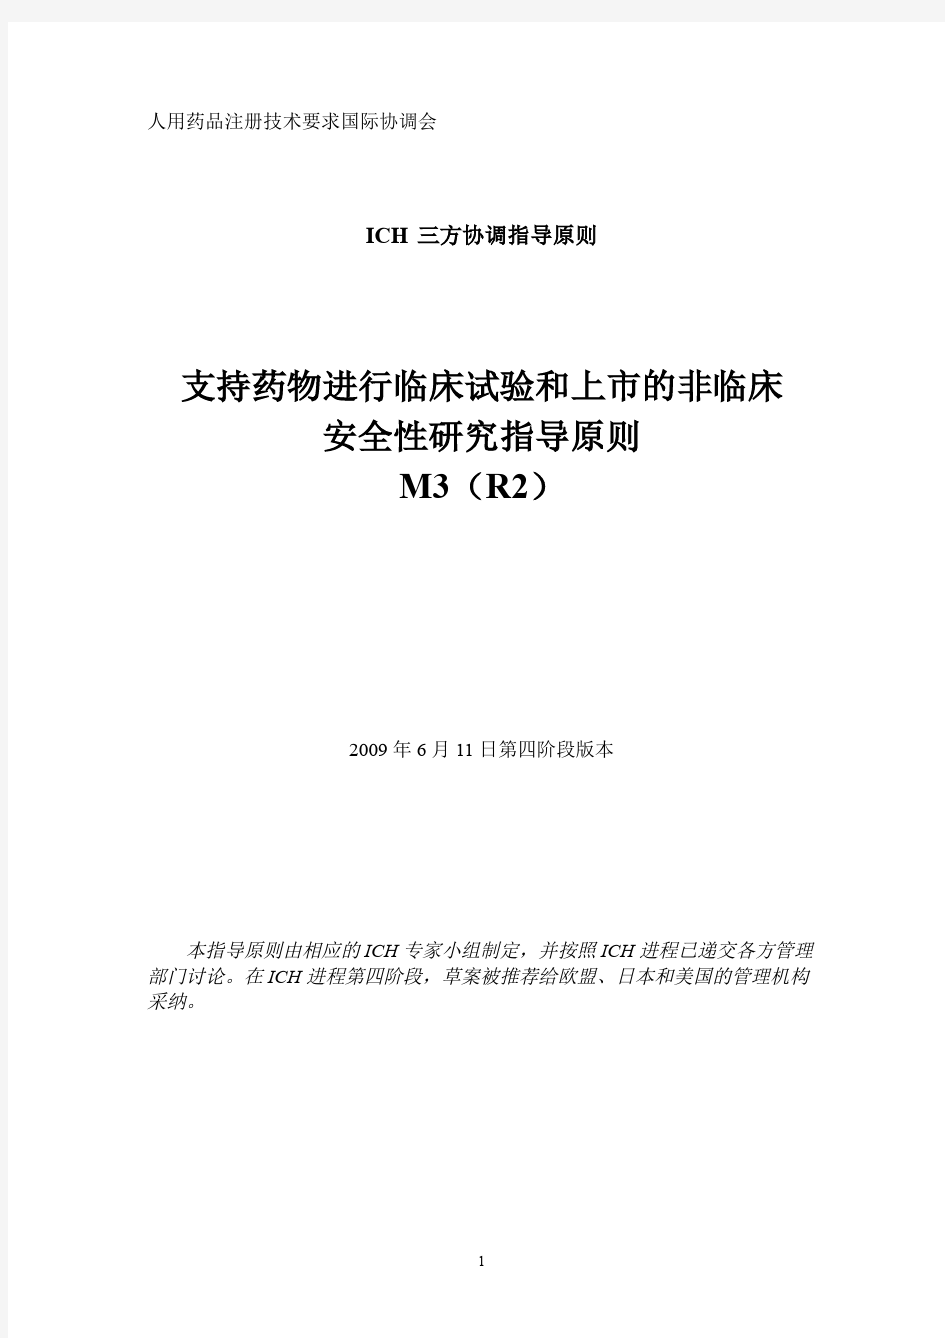 ICH M3(R2) 中文翻译版